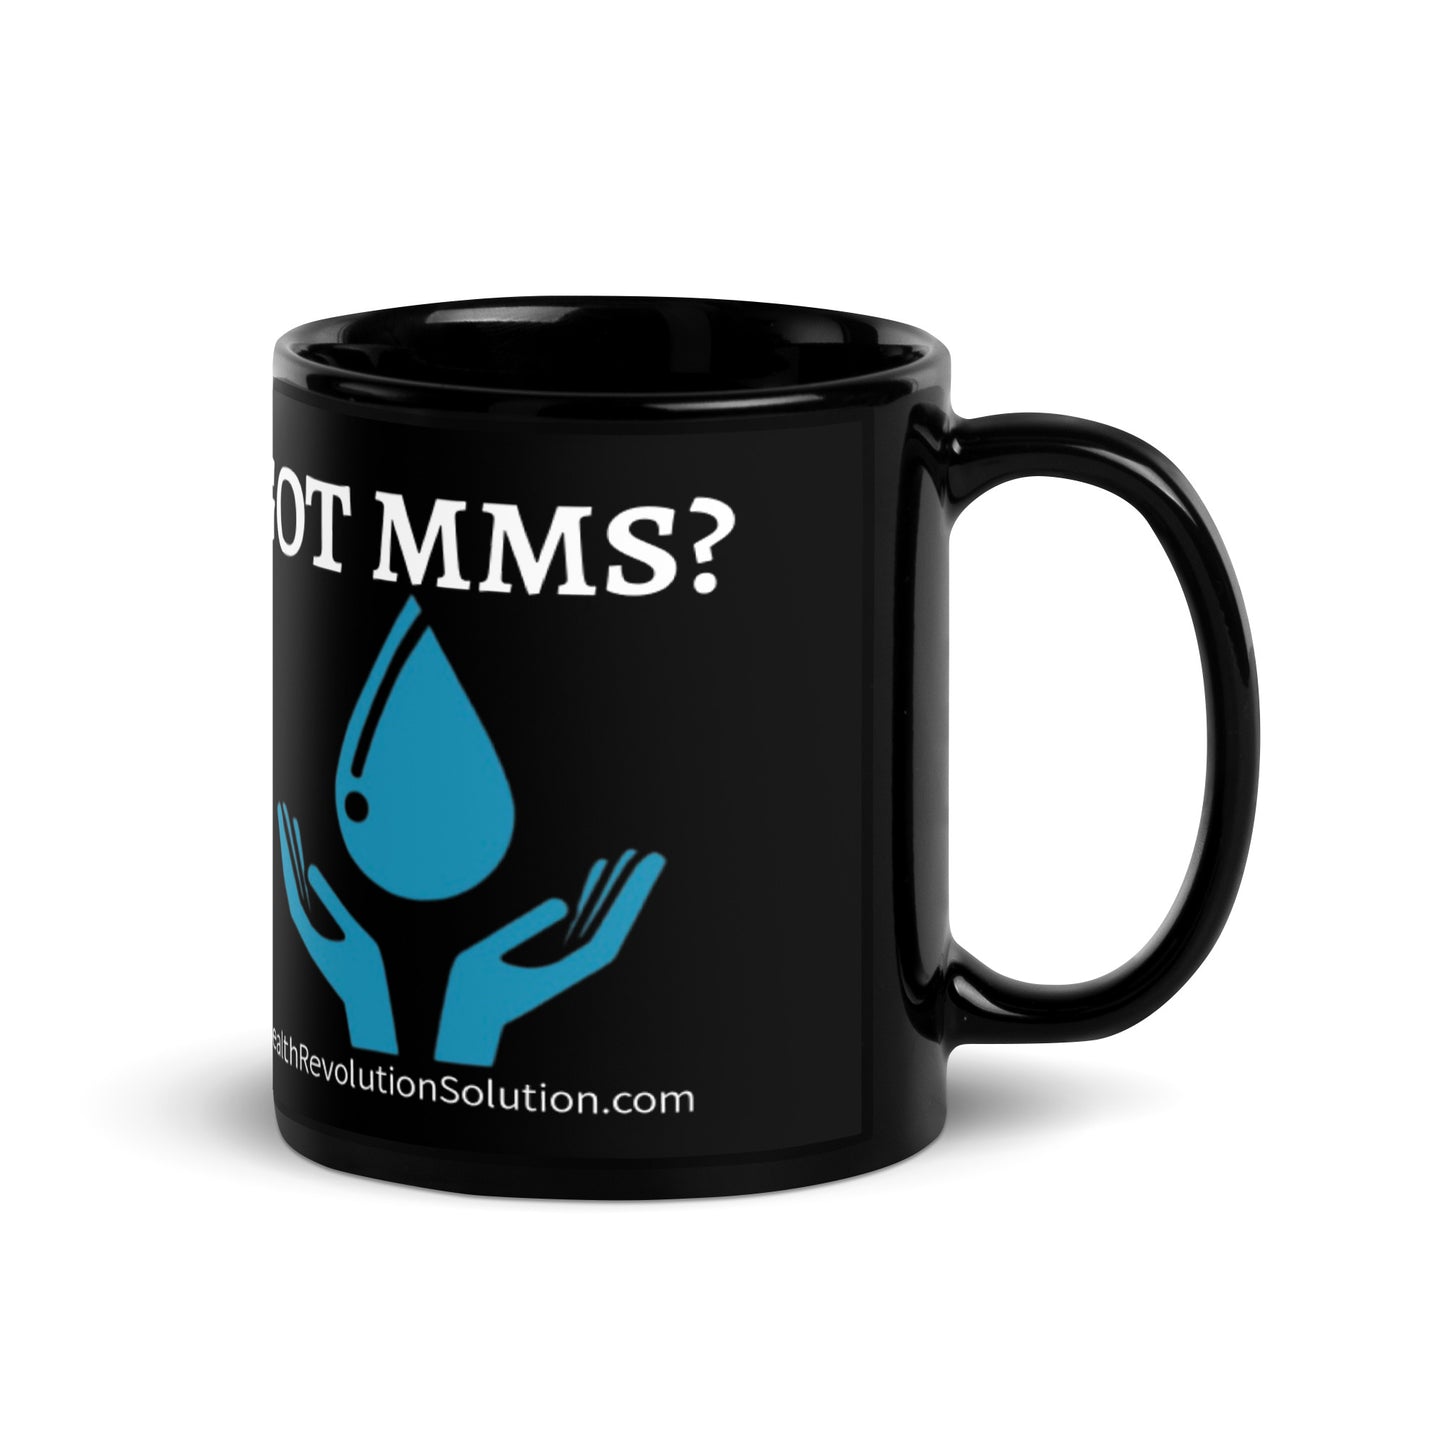 “GOT MMS?” Black Glossy Mug (11oz & 15oz)